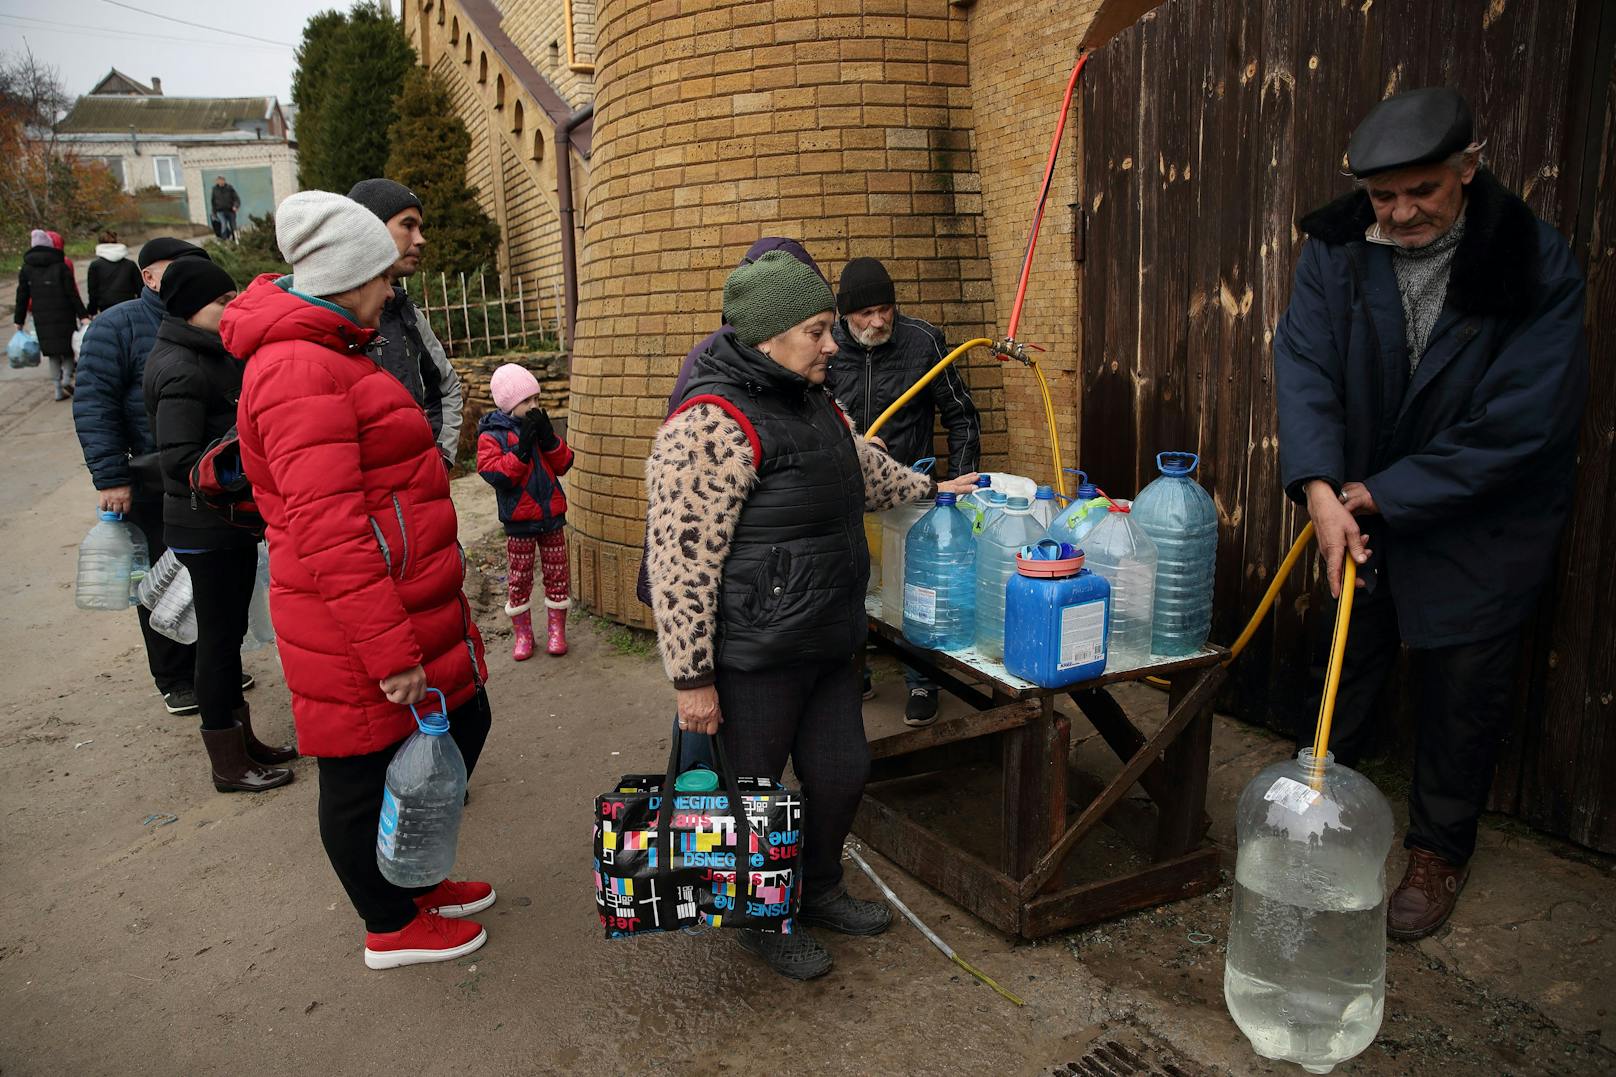 Russen zerstörten alles: Cherson wegen Winter evakuiert